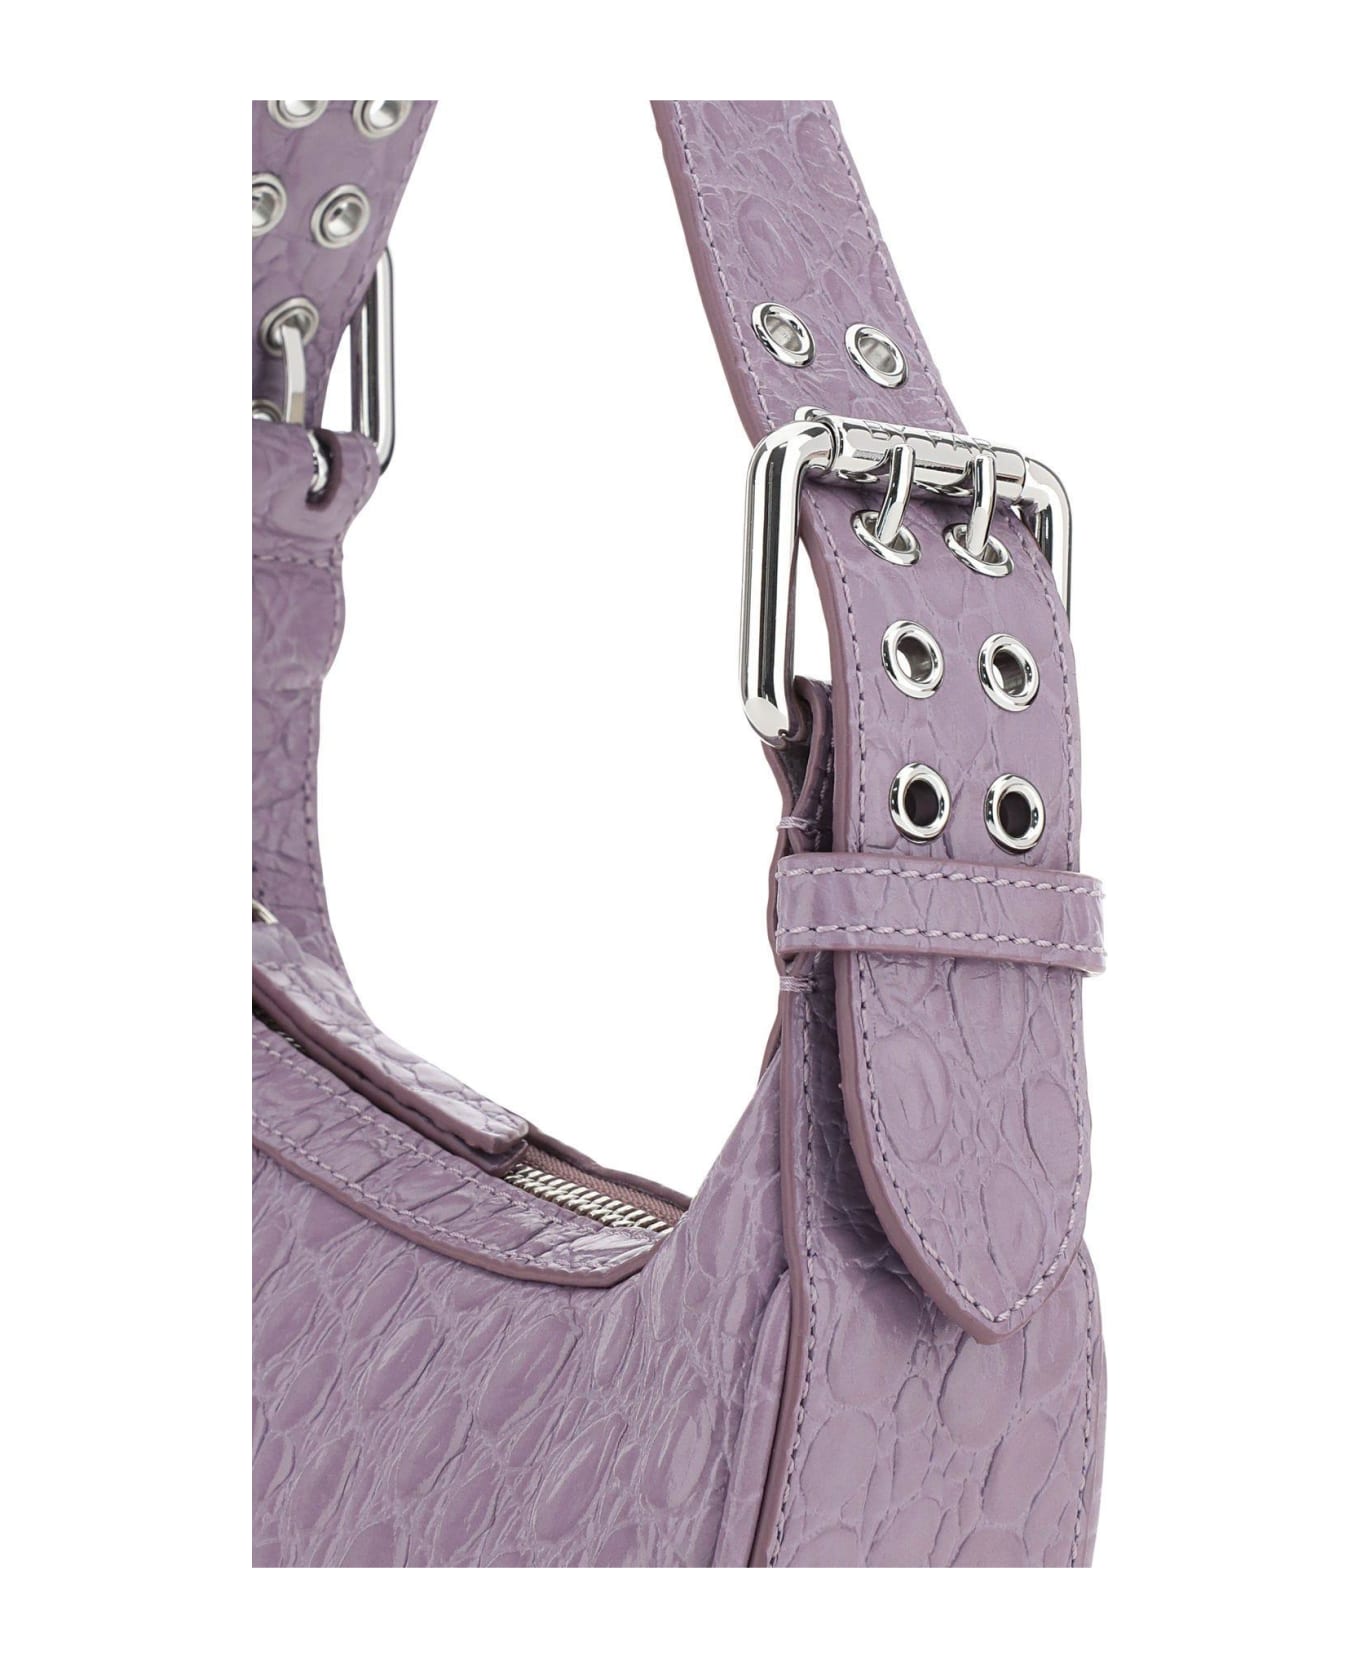 BY FAR Lilac Leather Mini Soho Handbag - Viola